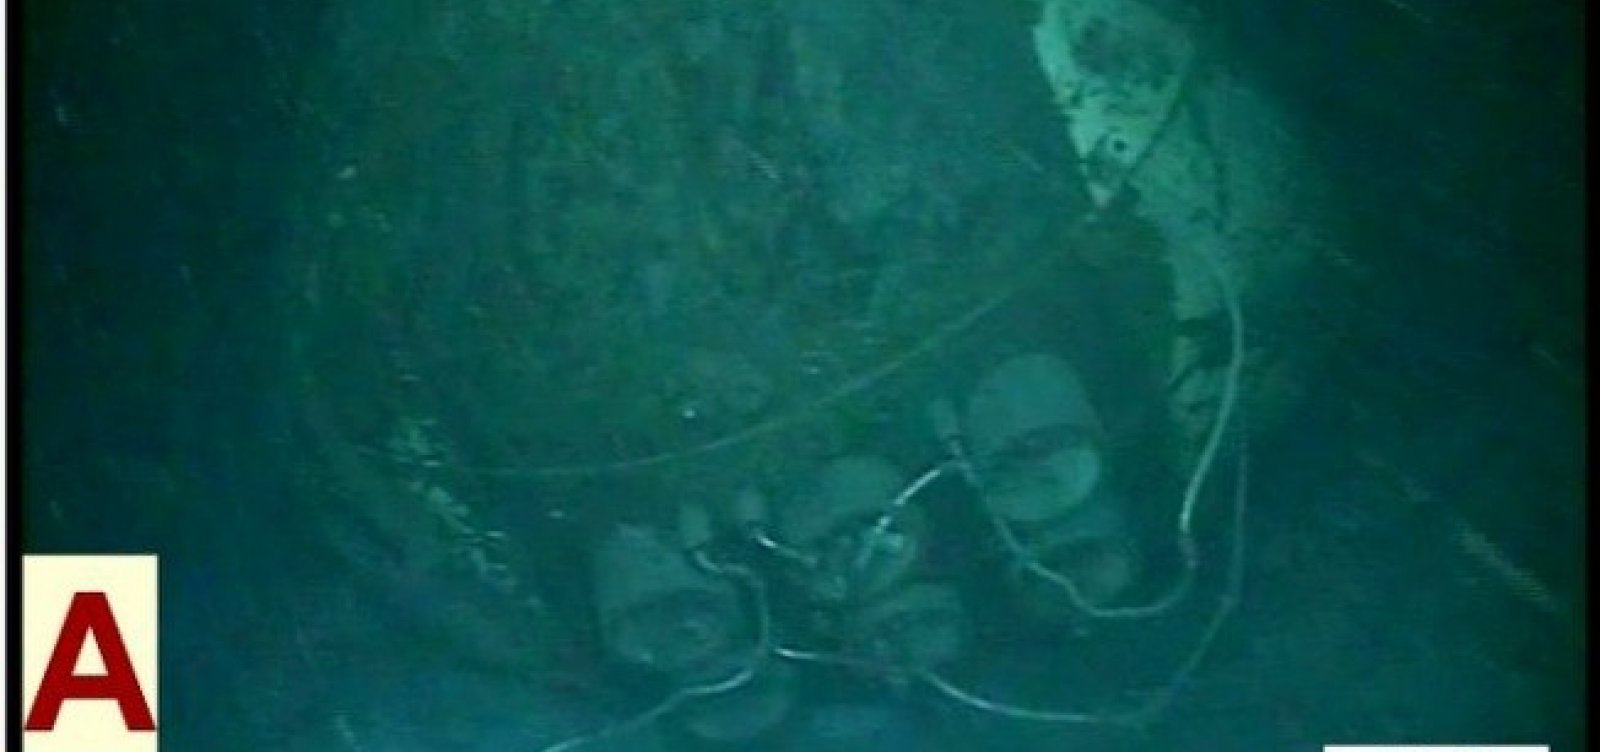 Marinha da Argentina divulga imagens de submarino naufragado